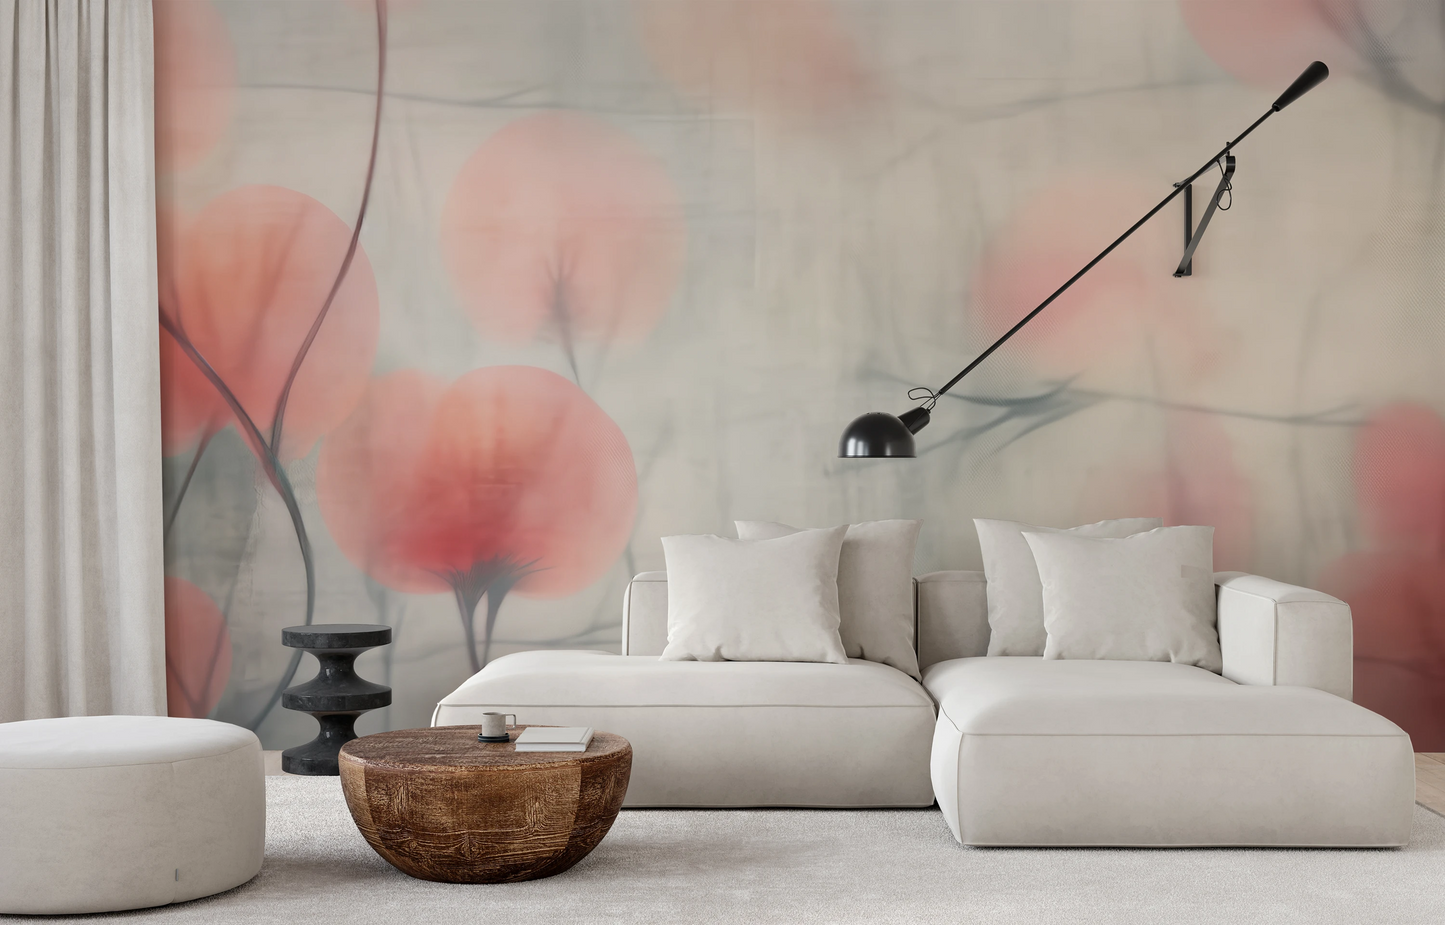 Fototapeta malowana o nazwie Misty Flora Softness pokazana w aranżacji wnętrza.